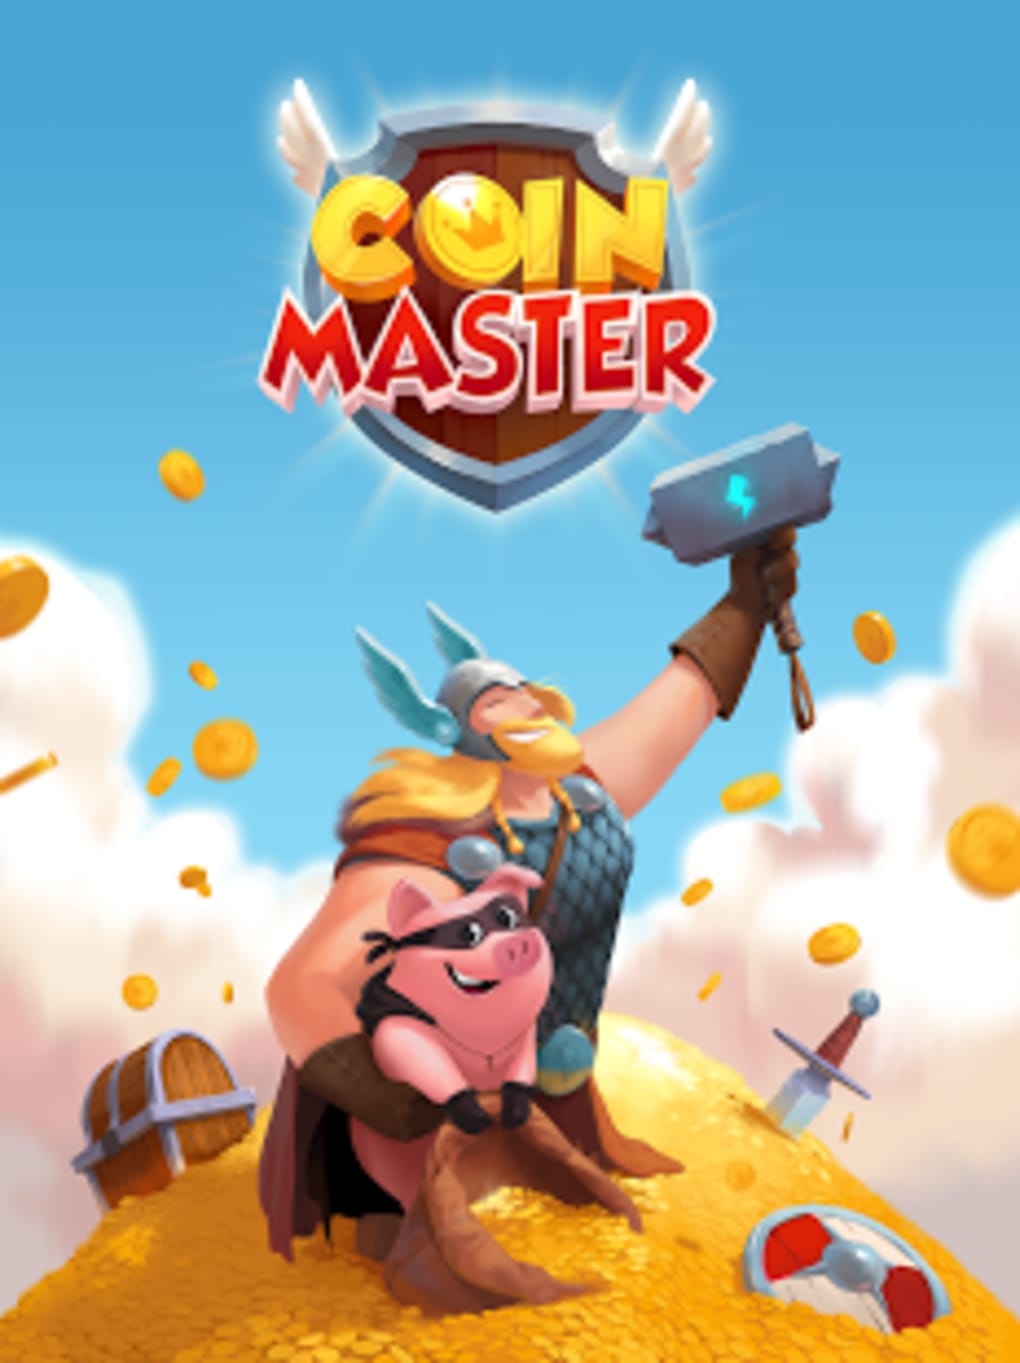 Coin master connection error